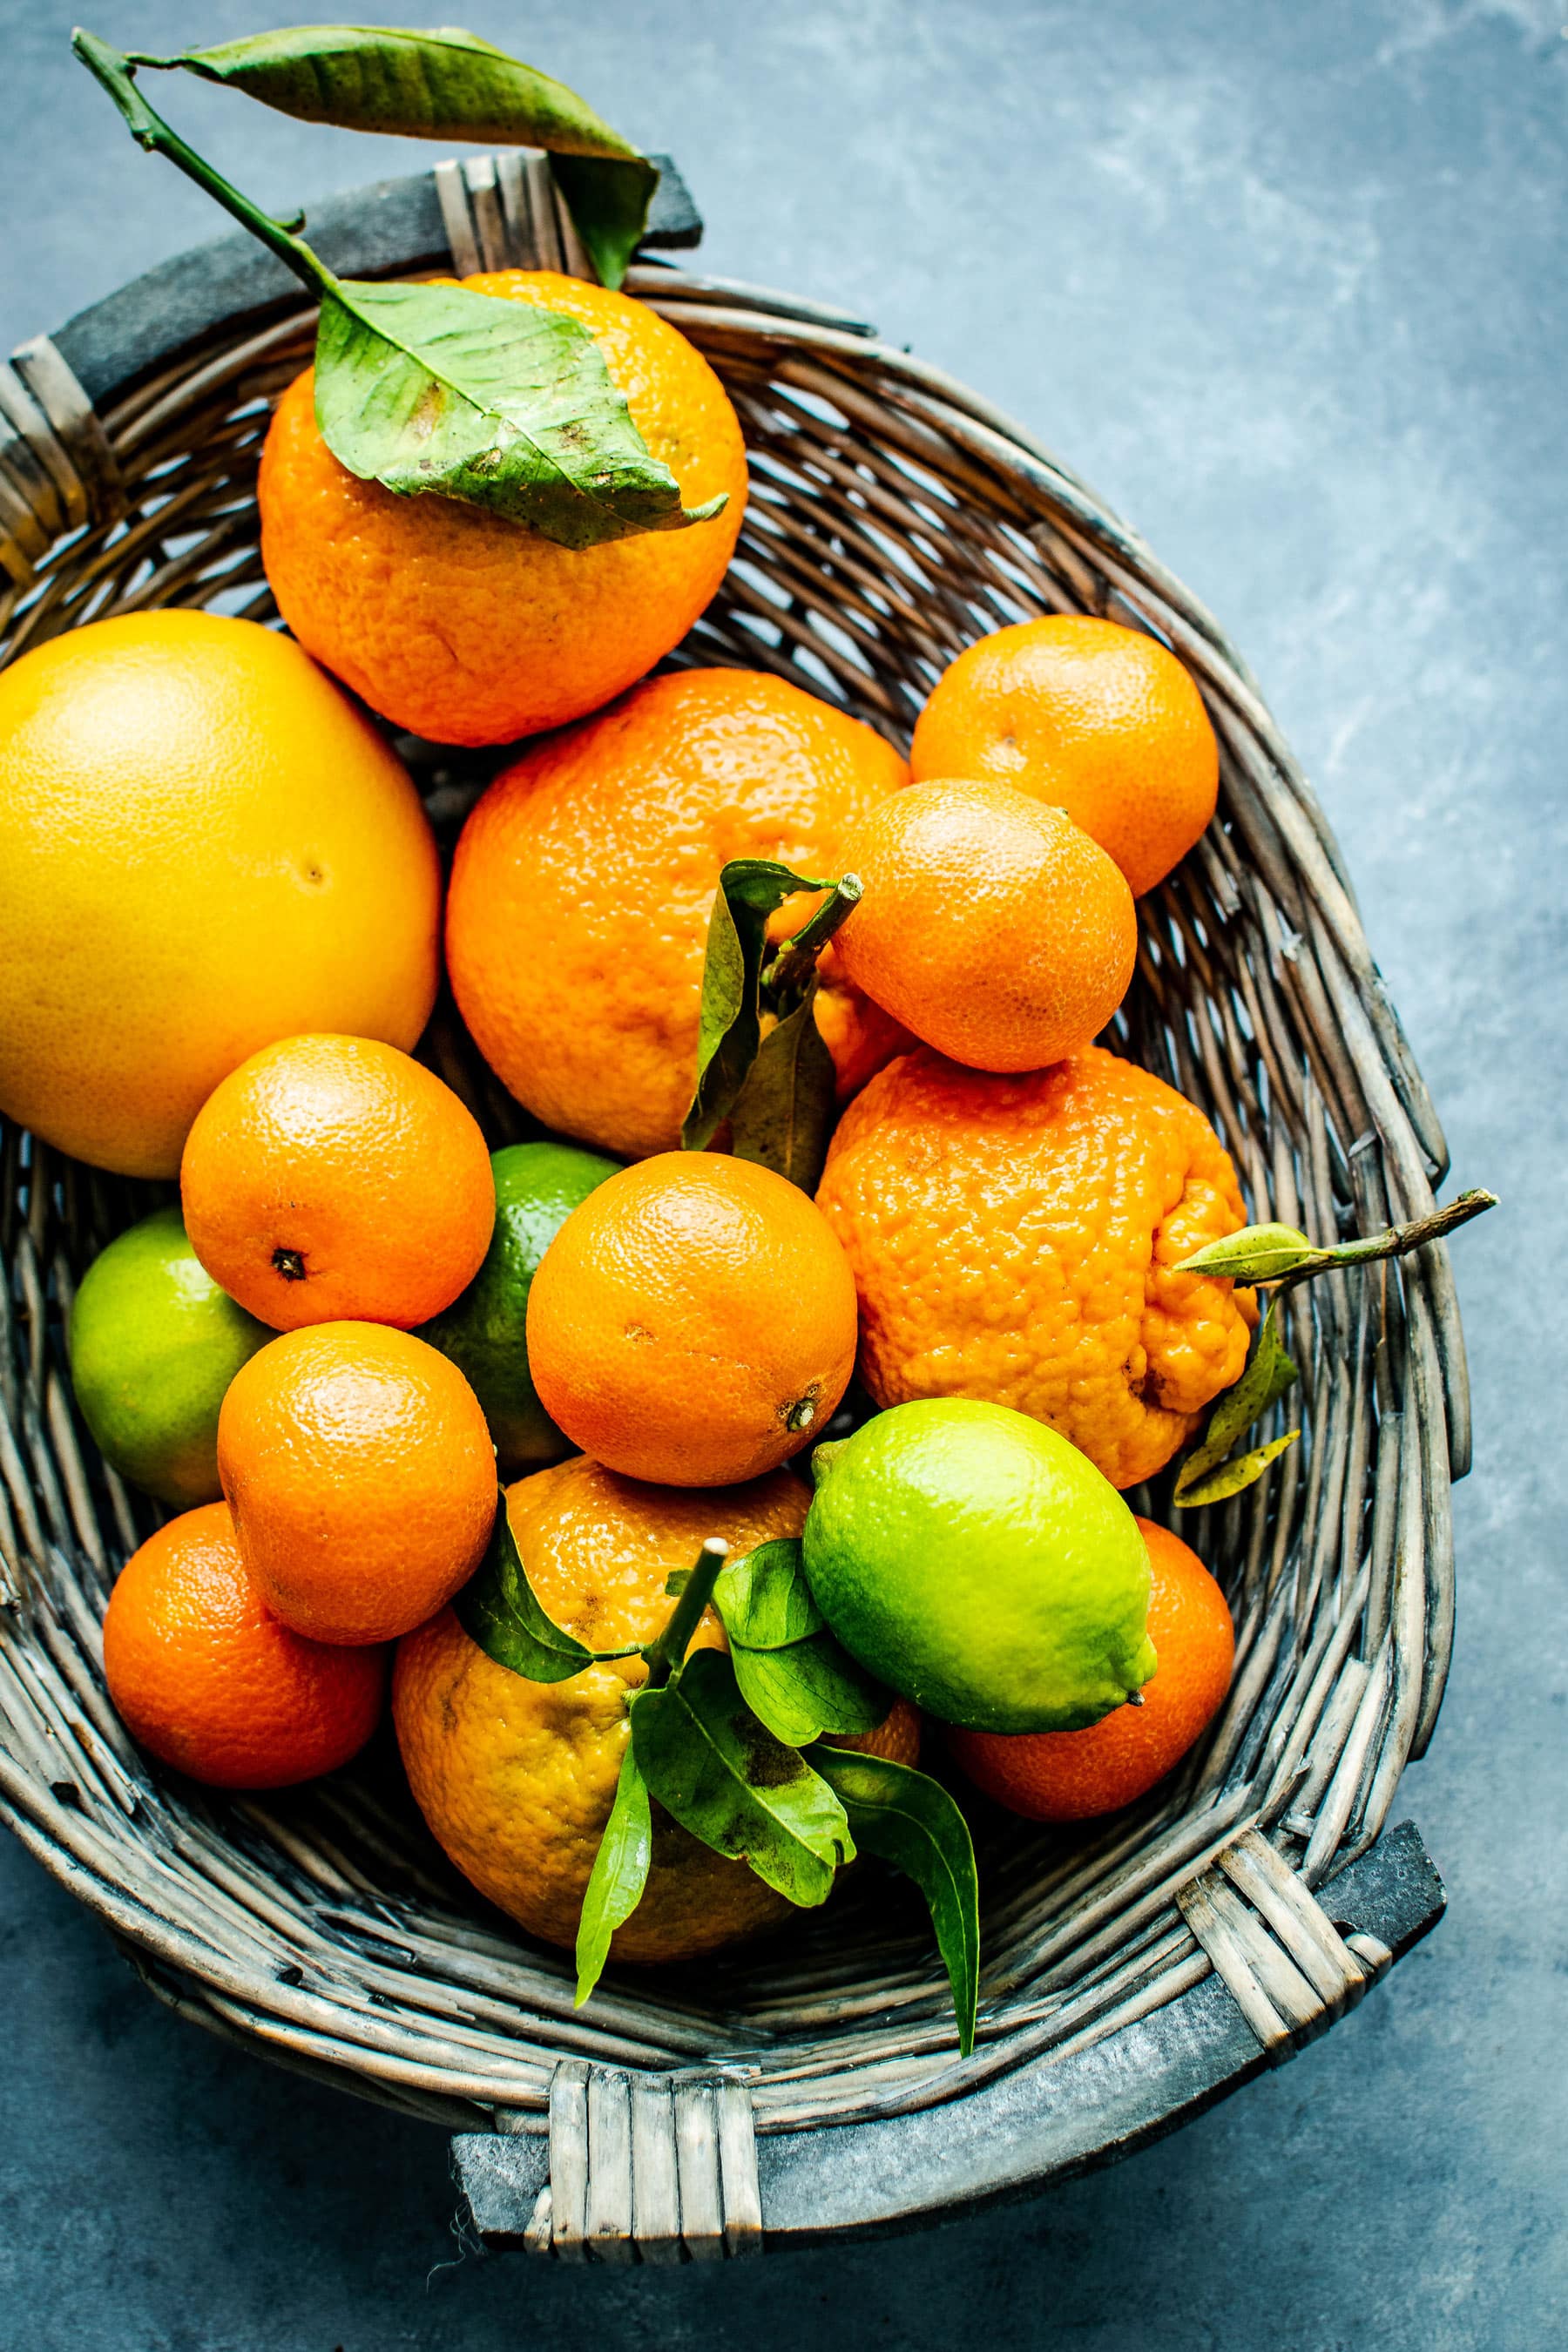 Los peligros y beneficios de la fruta deshidratada que quizá no conocías